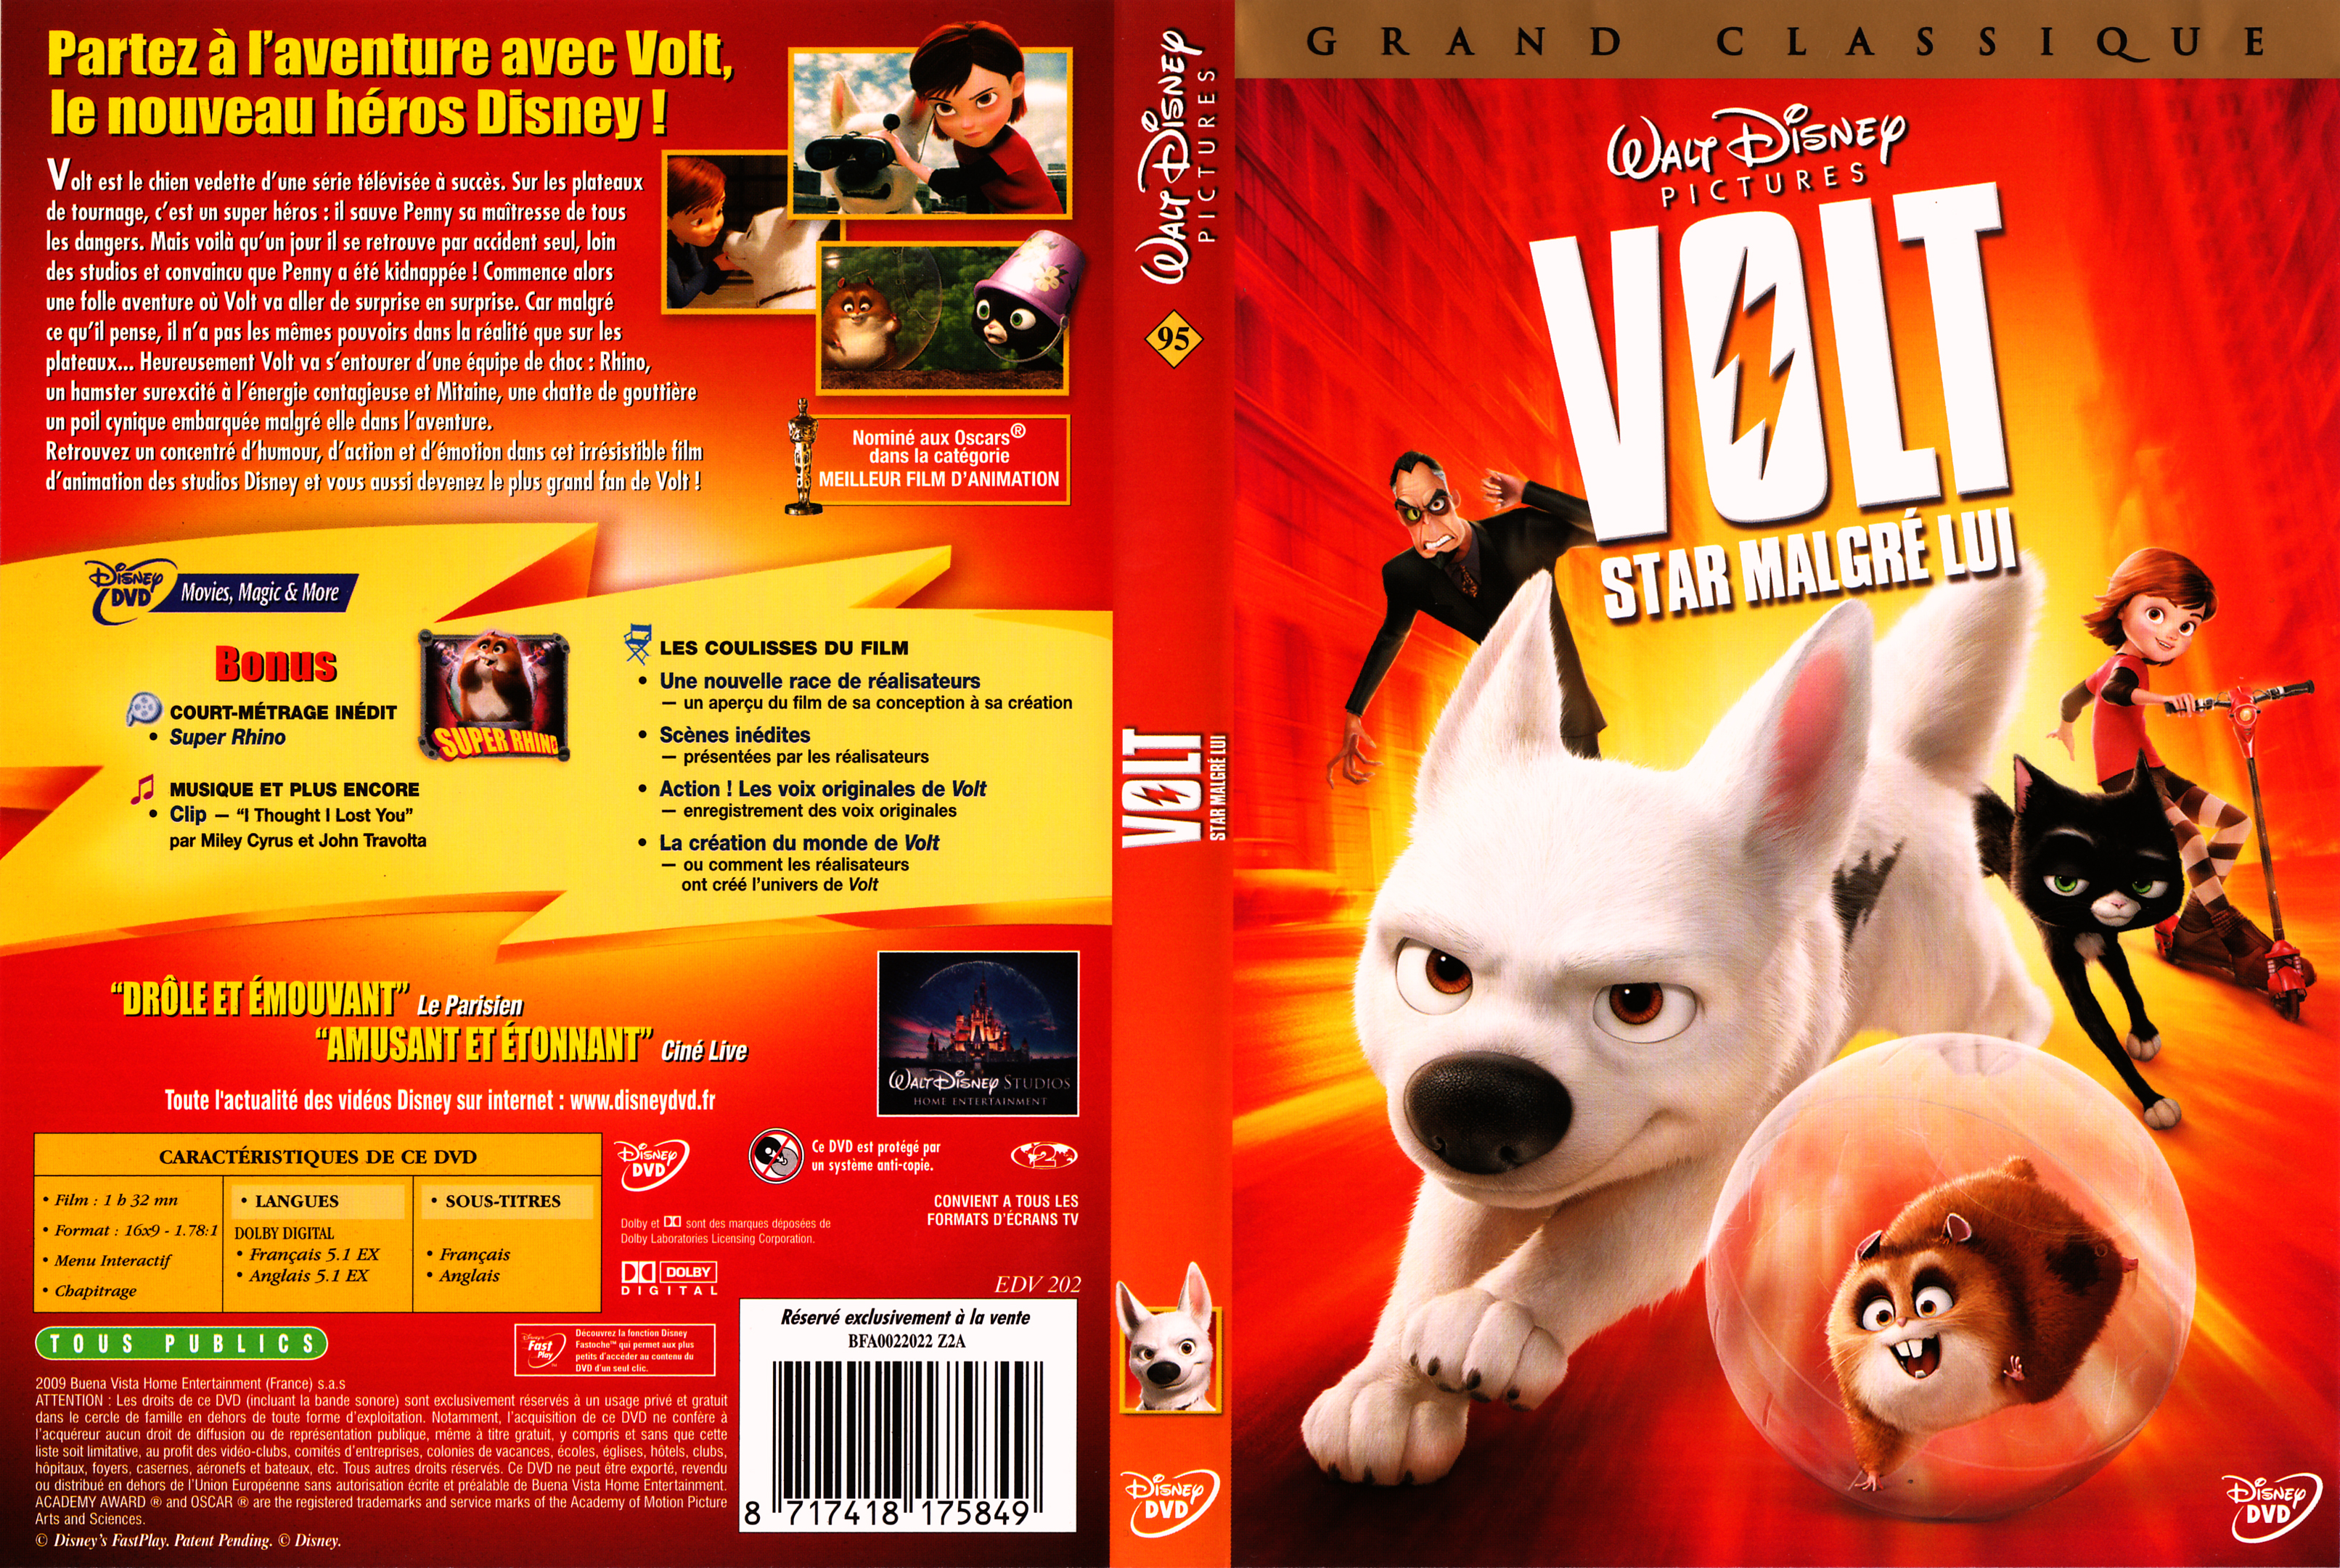 Jaquette DVD Volt v2